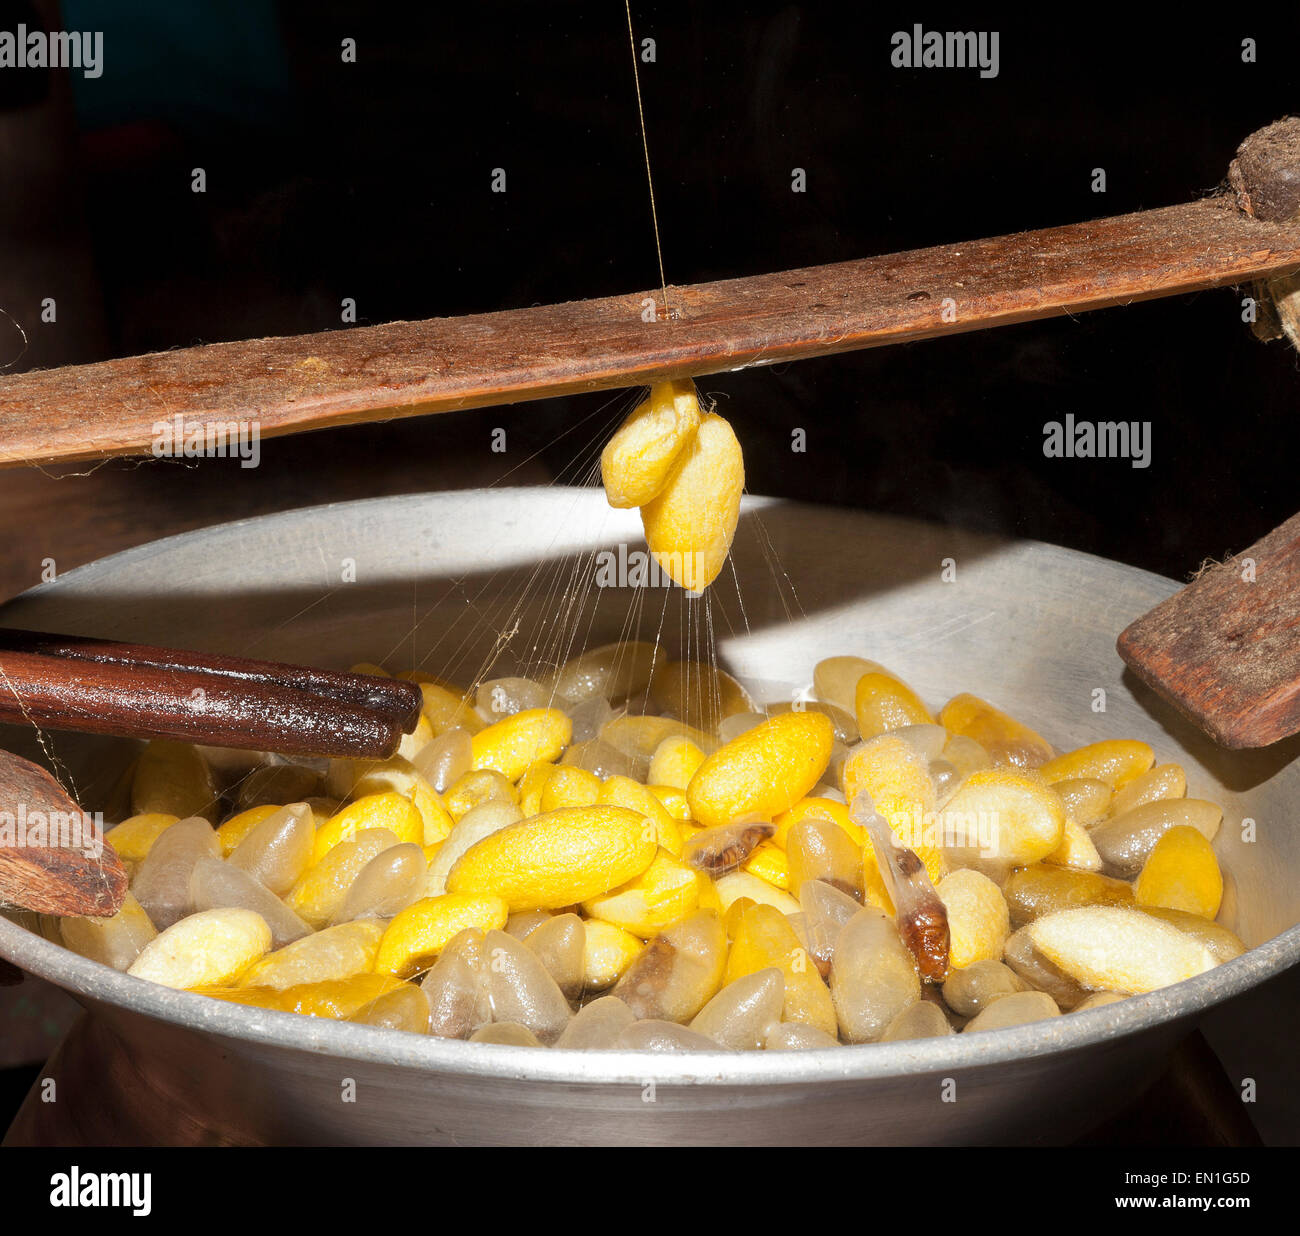 Los trabajadores de la seda, la olla de agua caliente que contenga los capullos de seda, son de color amarillo, blanco tailandés son chinos, Chiang Mai, Tailandia Foto de stock